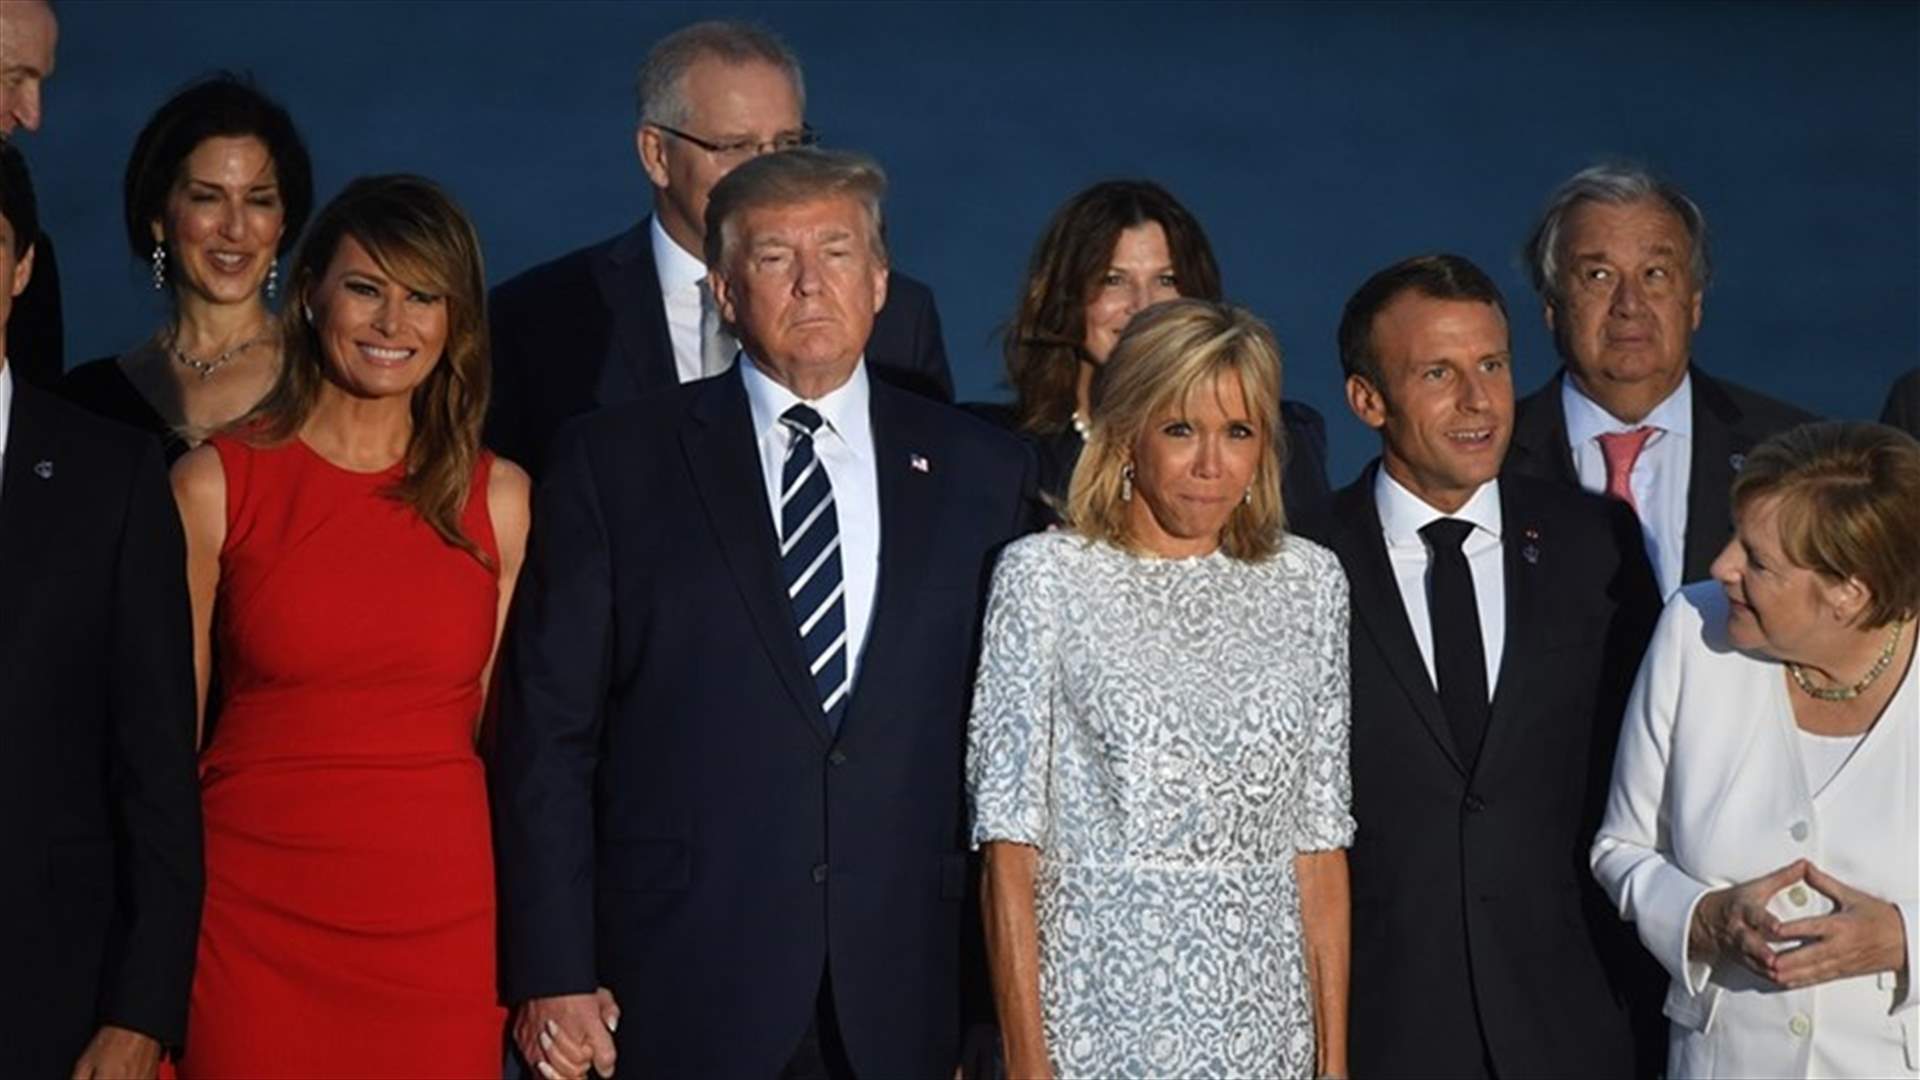 قبلات متبادلة بين ترامب وبريجيت ماكرون وميركل... والرئيس الفرنسي يراقب الوضع مبتسما (صور)